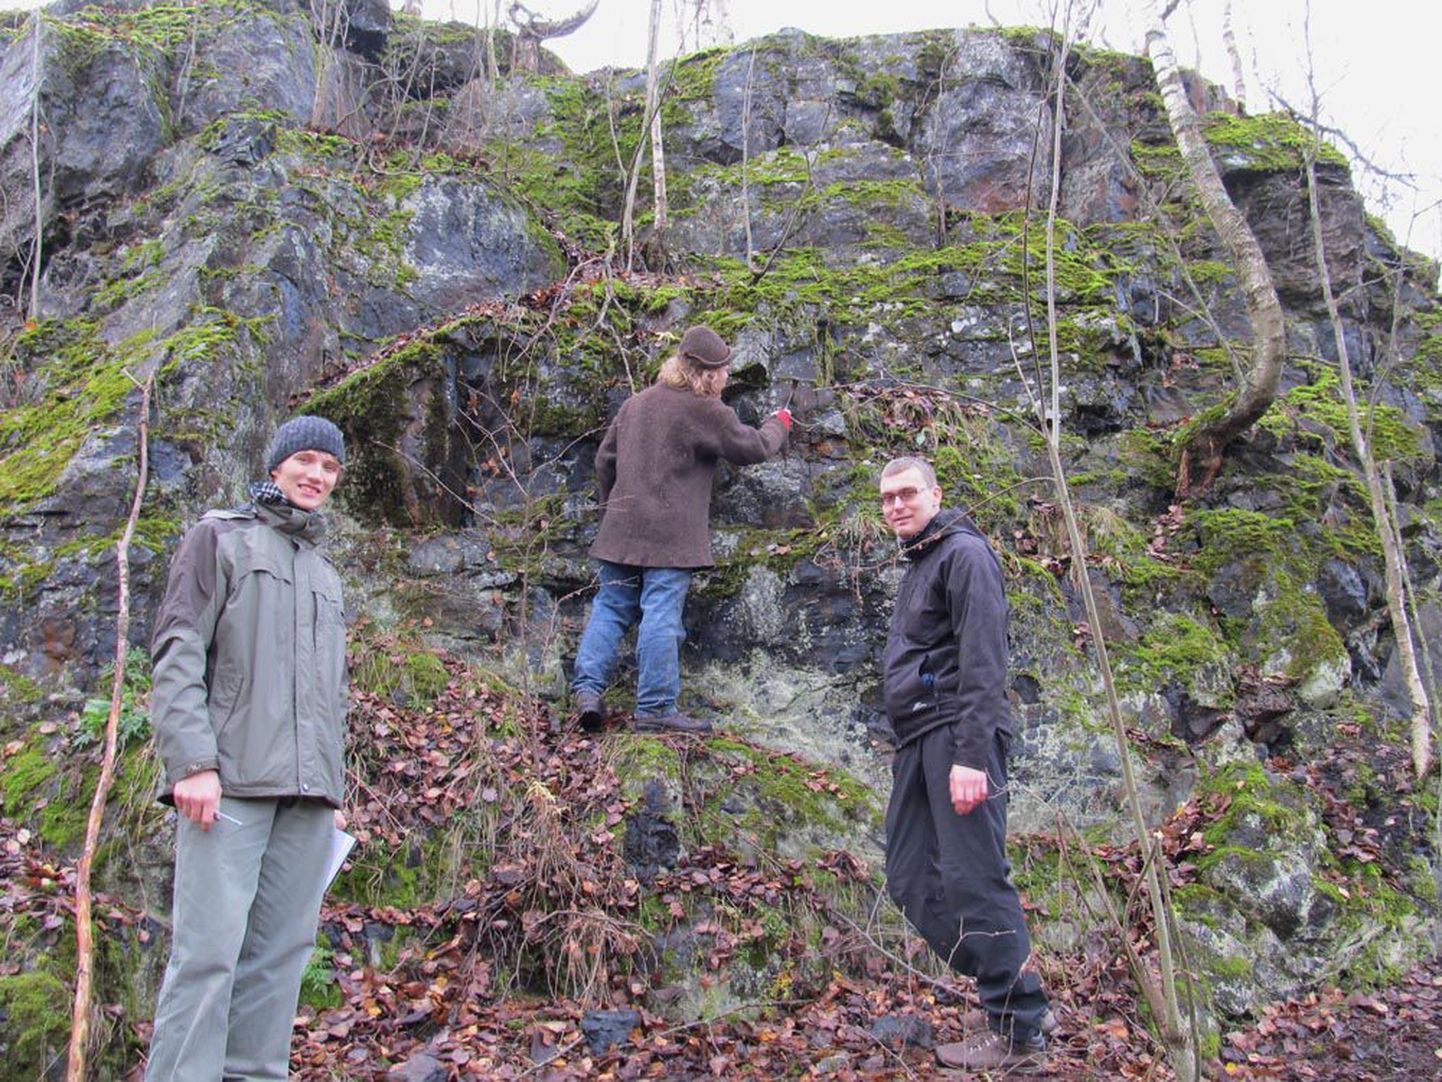 Geoloogid Kaarel Mänd (vasakult), Mikk Gaškov ja Lauri Joosu 2012. aasta sügisel Karjalas paljandi ääres, kust leiti kahe miljardi aasta vanust fosforiiti. Sellest fosforiidist elektronmikroskoobiga tehtud pildilt paistavad välja iidsete mikroobide fossiilid.